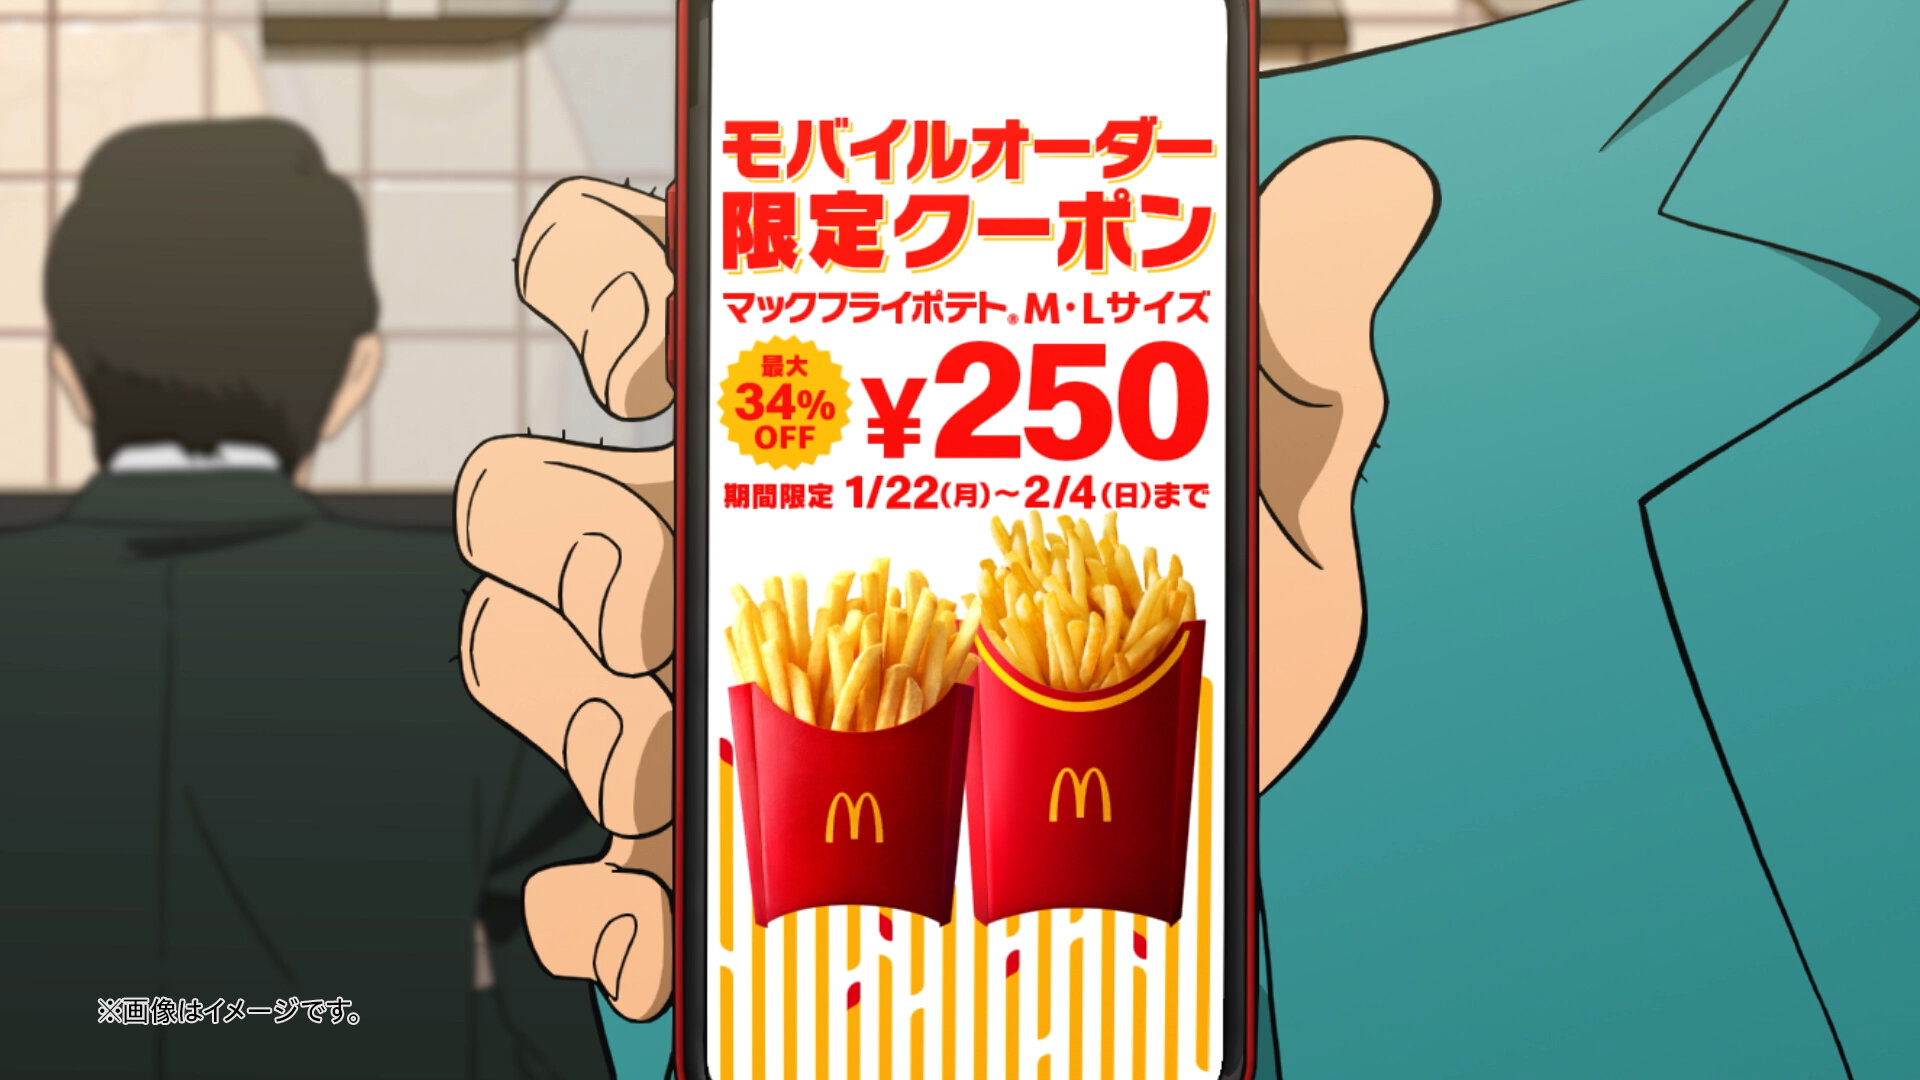 <p>McDonald's <br />
MOP'24</p>